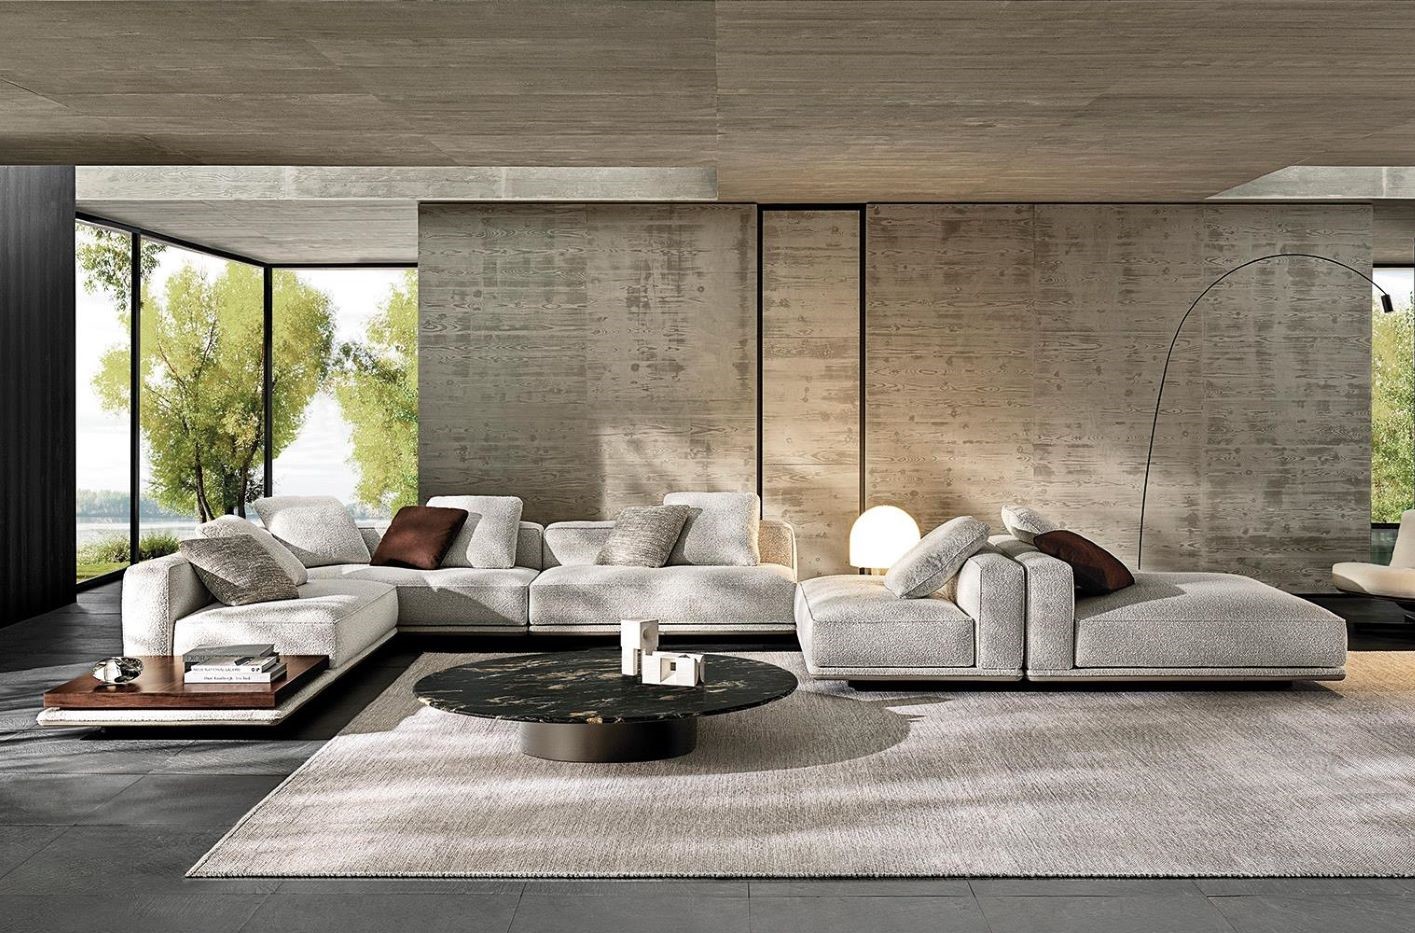 タイムレスなデザインと品格をたたえる家具ブランド「Minotti」